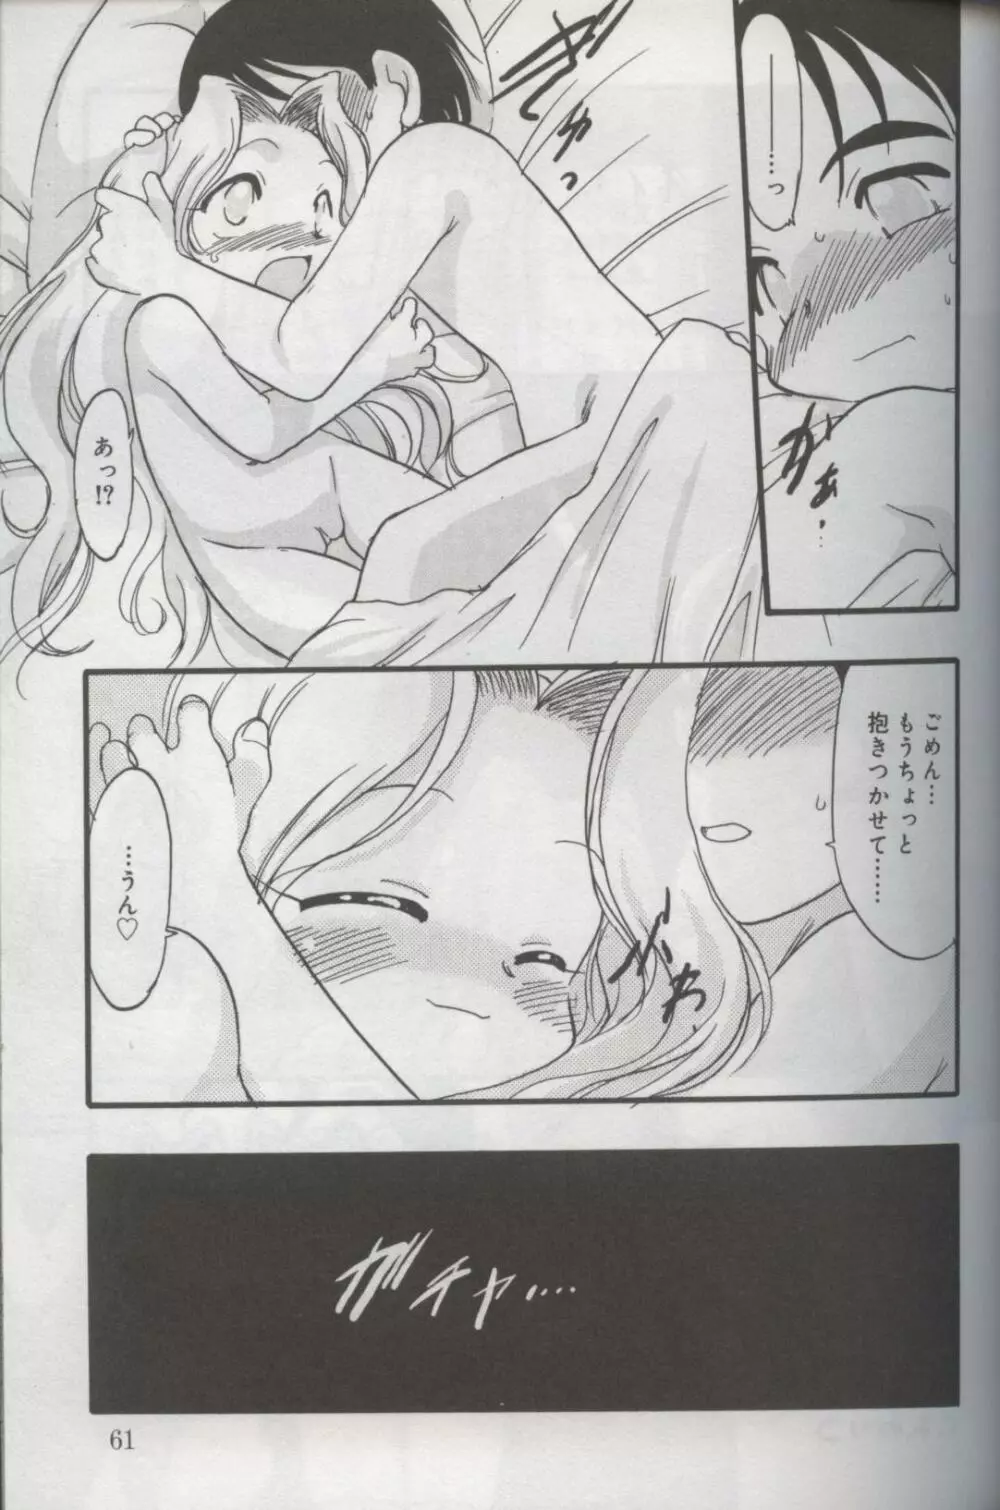 Kotori-kan Vol 3 58ページ